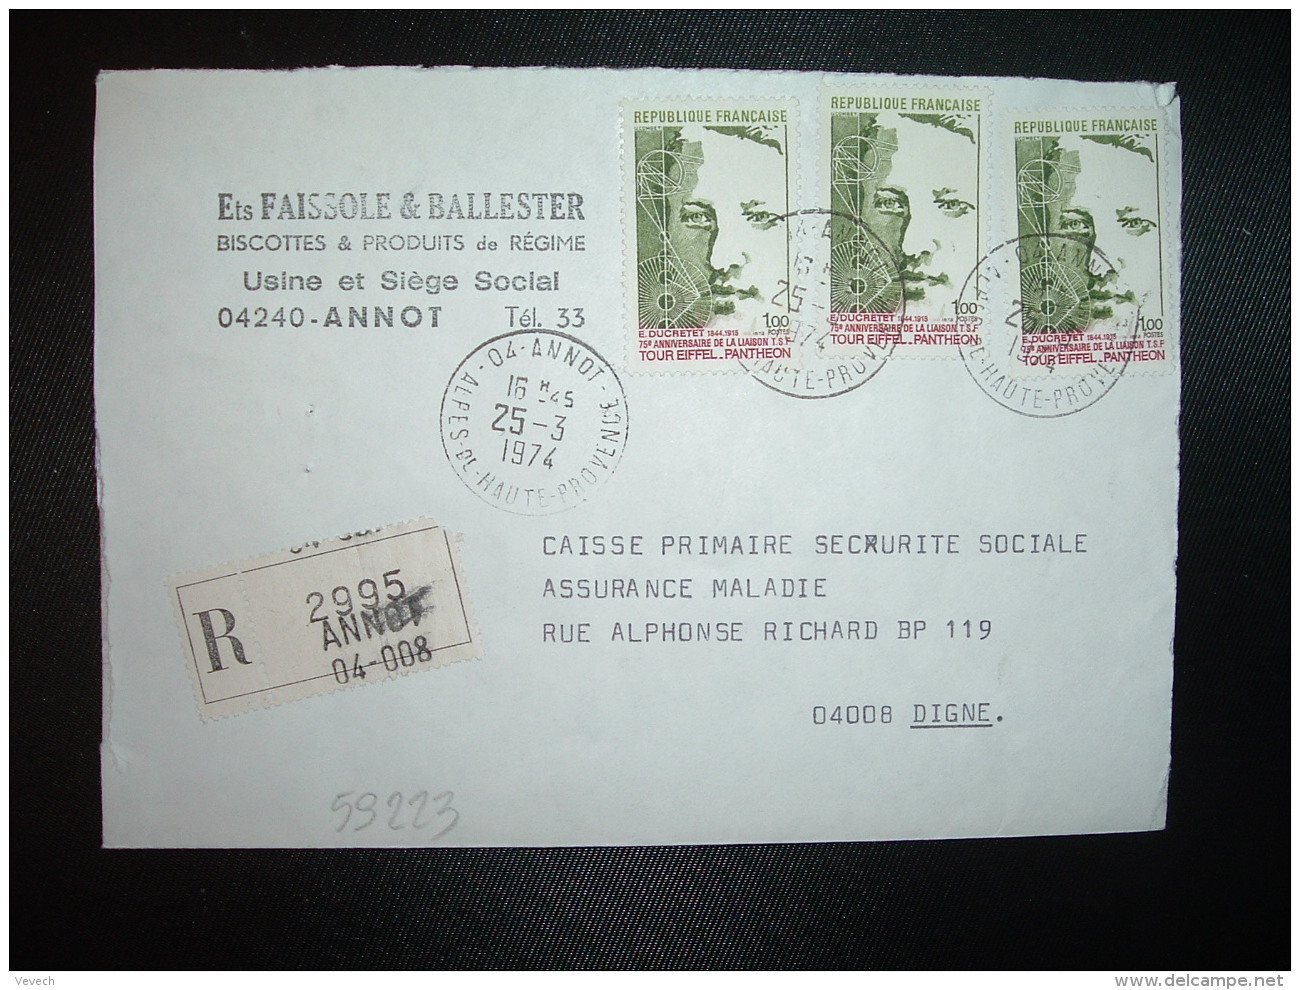 LR Pour CPAM TP DUCRETET TOUR EIFFEL PANTHEON 1,00 X3 OBL.25-3-1974 ANNOT (04 ALPES DE HAUTE PROVENCE) - Postal Rates